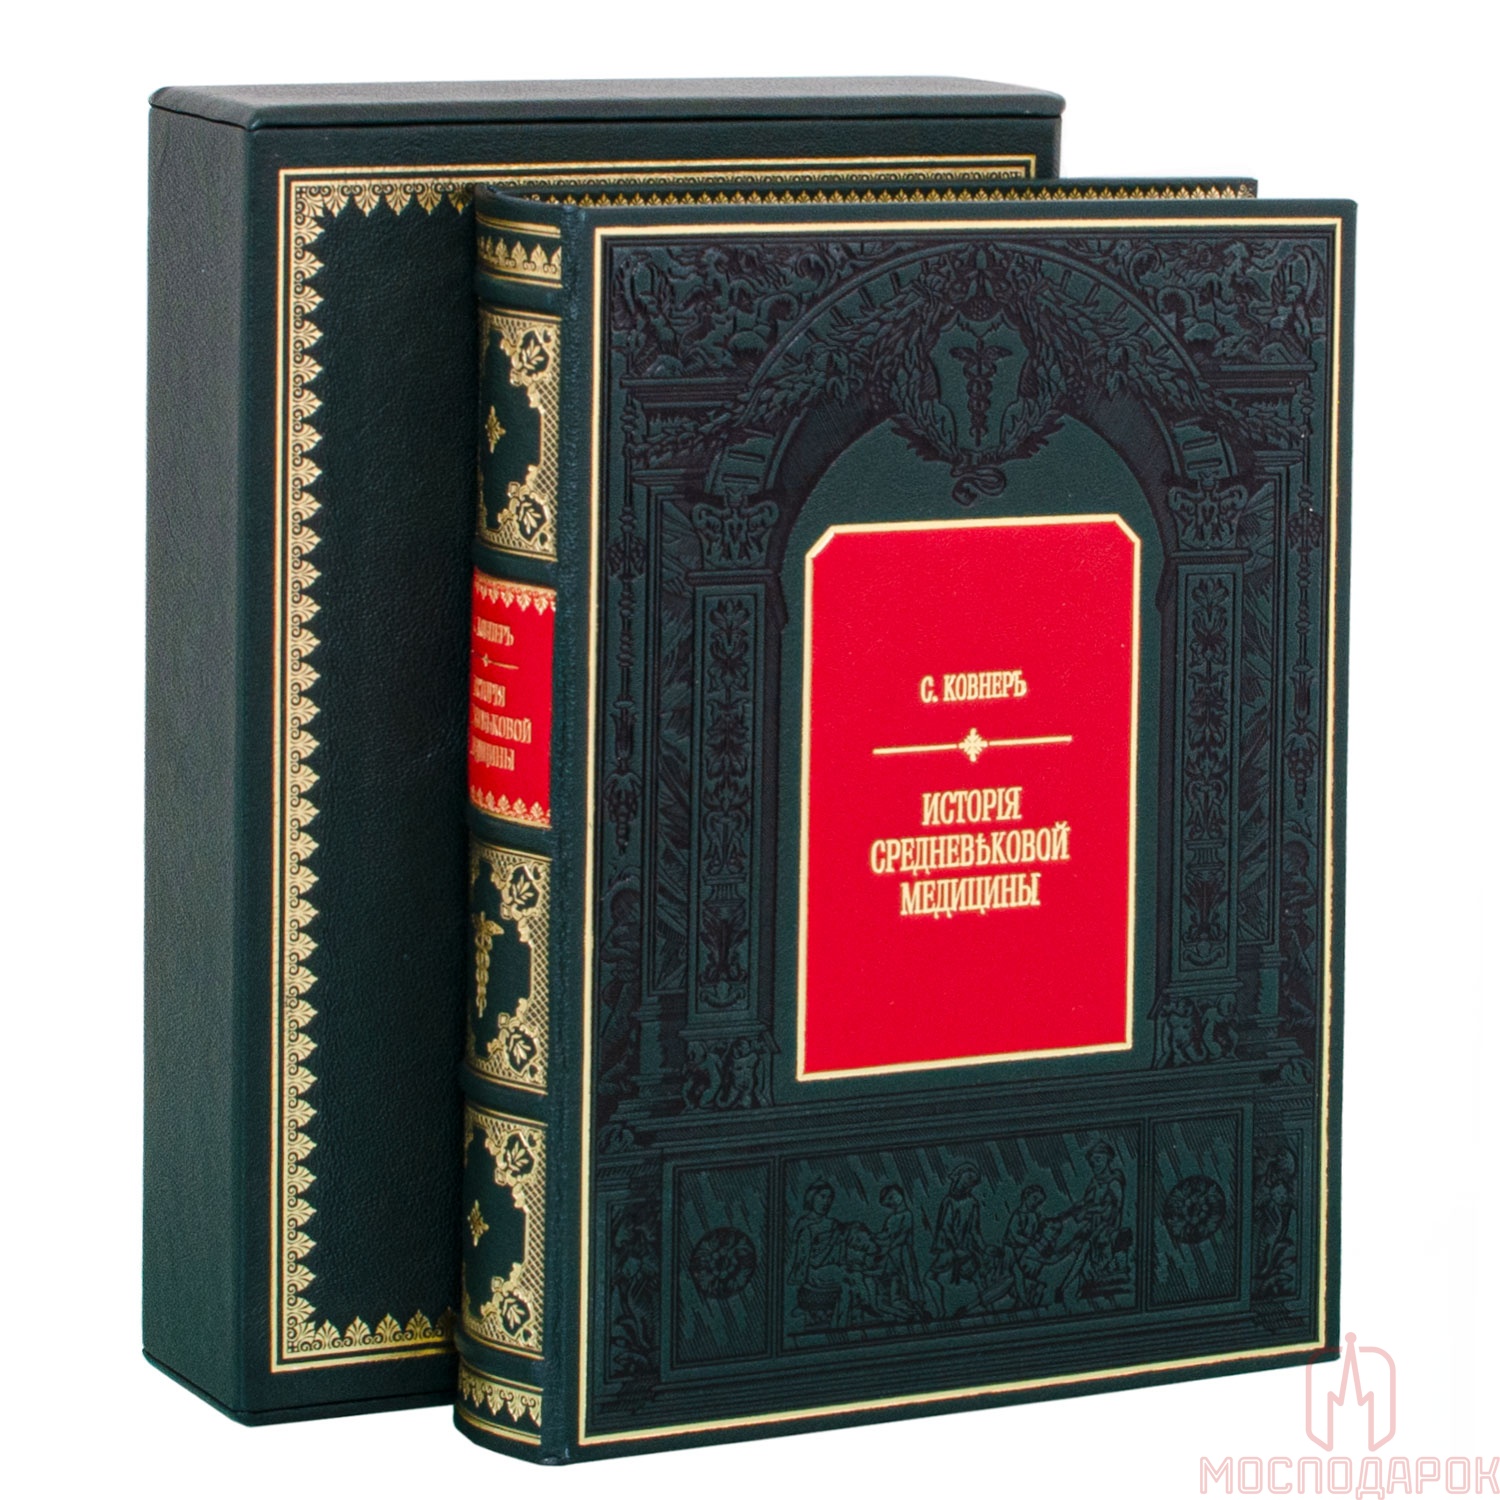 Книга подарочная "История средневековой медицины" - артикул: 207134 | Мосподарок 